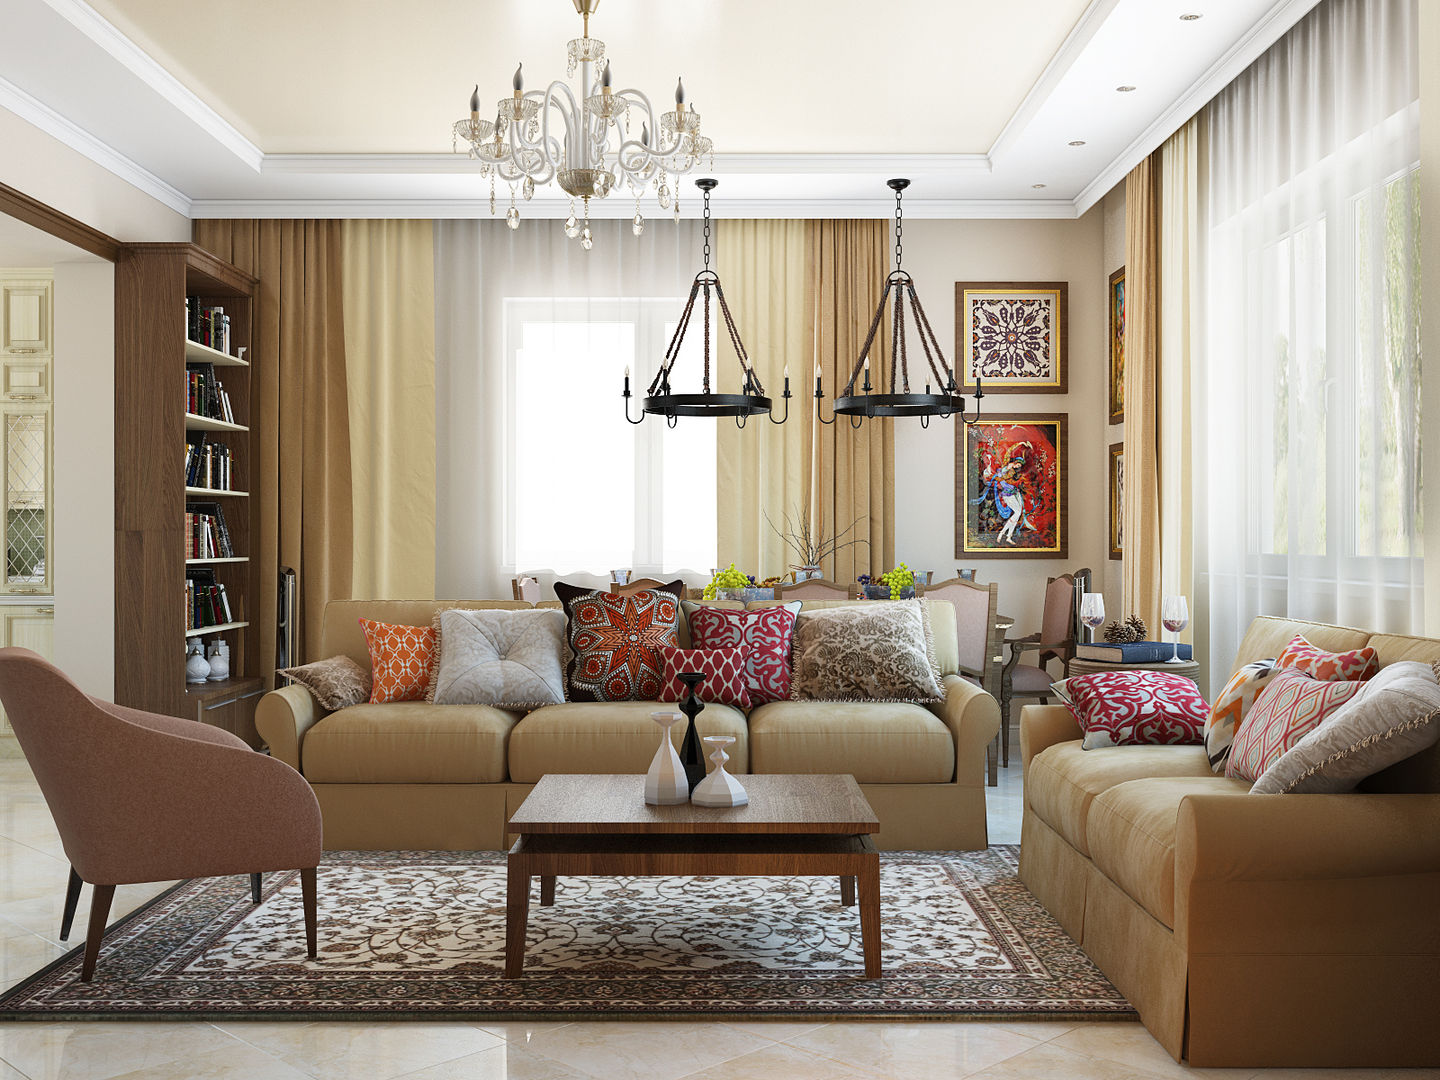 Классический интерьер с элементами ориентал и красивыми десткими, Tatiana Zaitseva Design Studio Tatiana Zaitseva Design Studio Modern living room